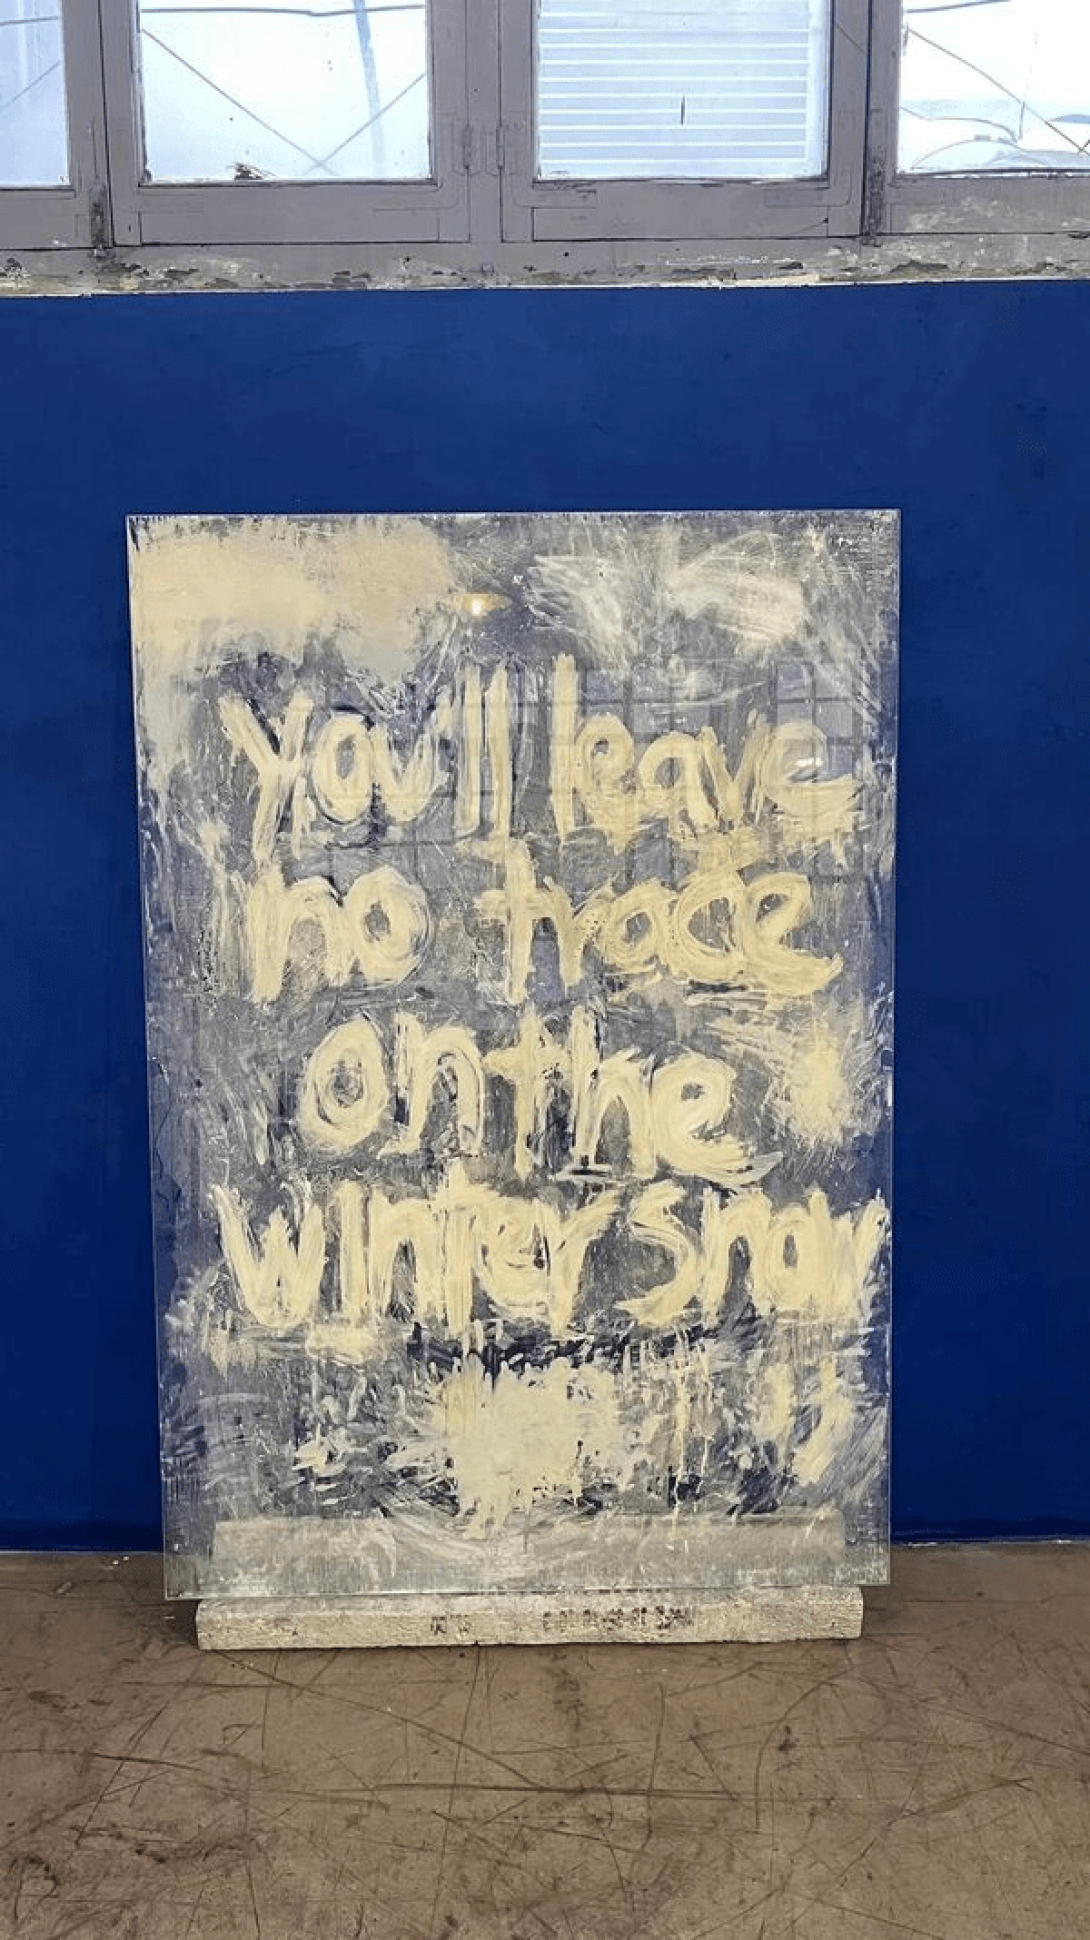 Instalación de cristal y concreto donde se lee: "You'll leave no trace on the winter snow".